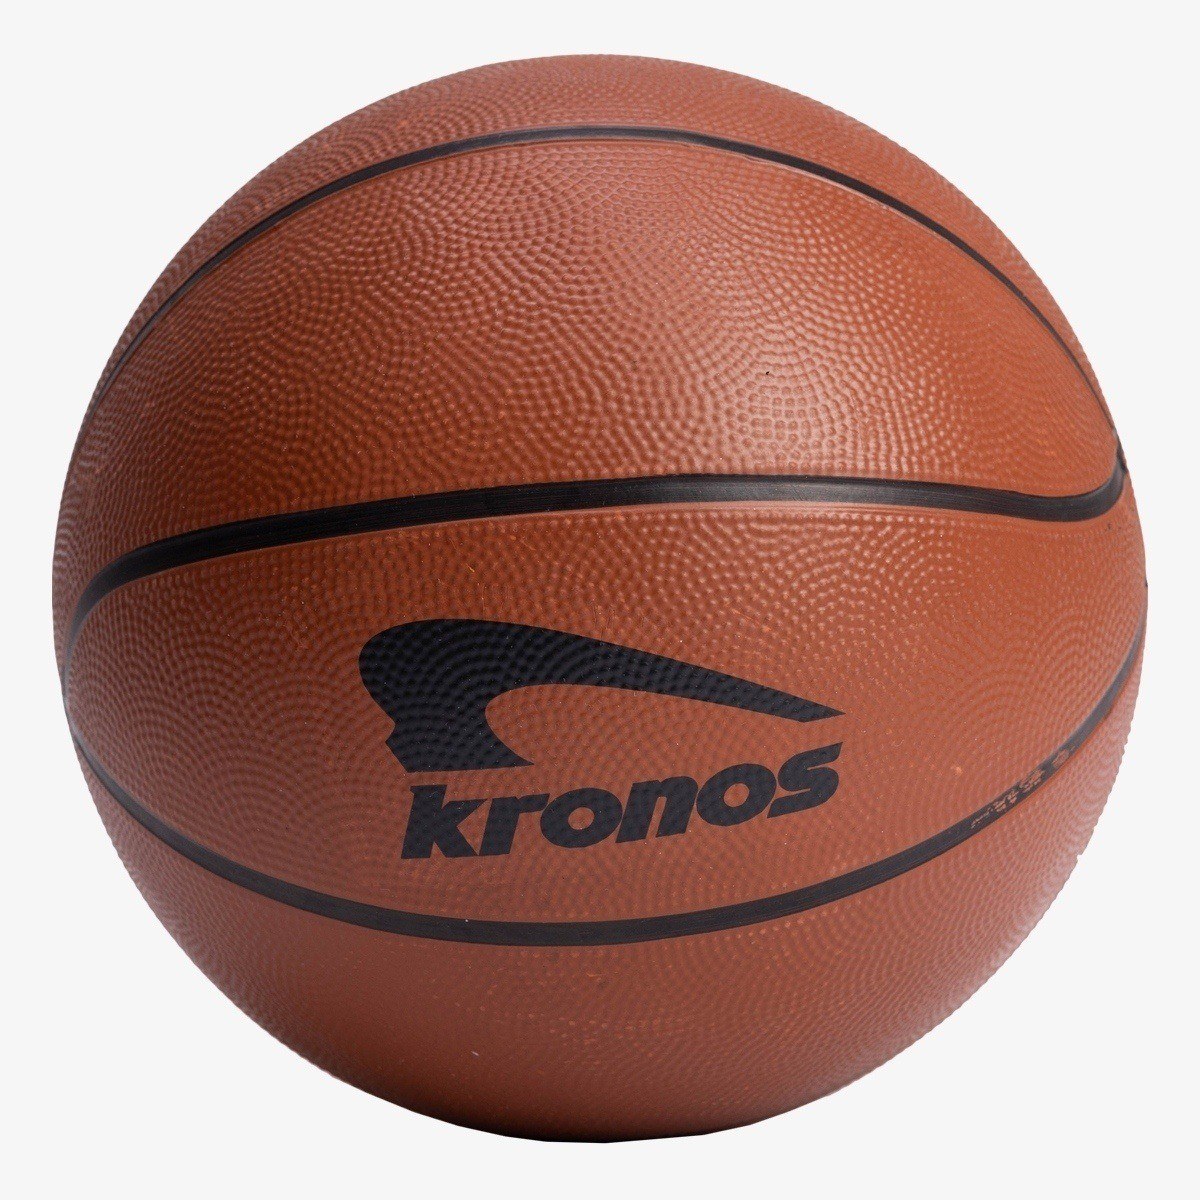 Kronos Topa Basketball 